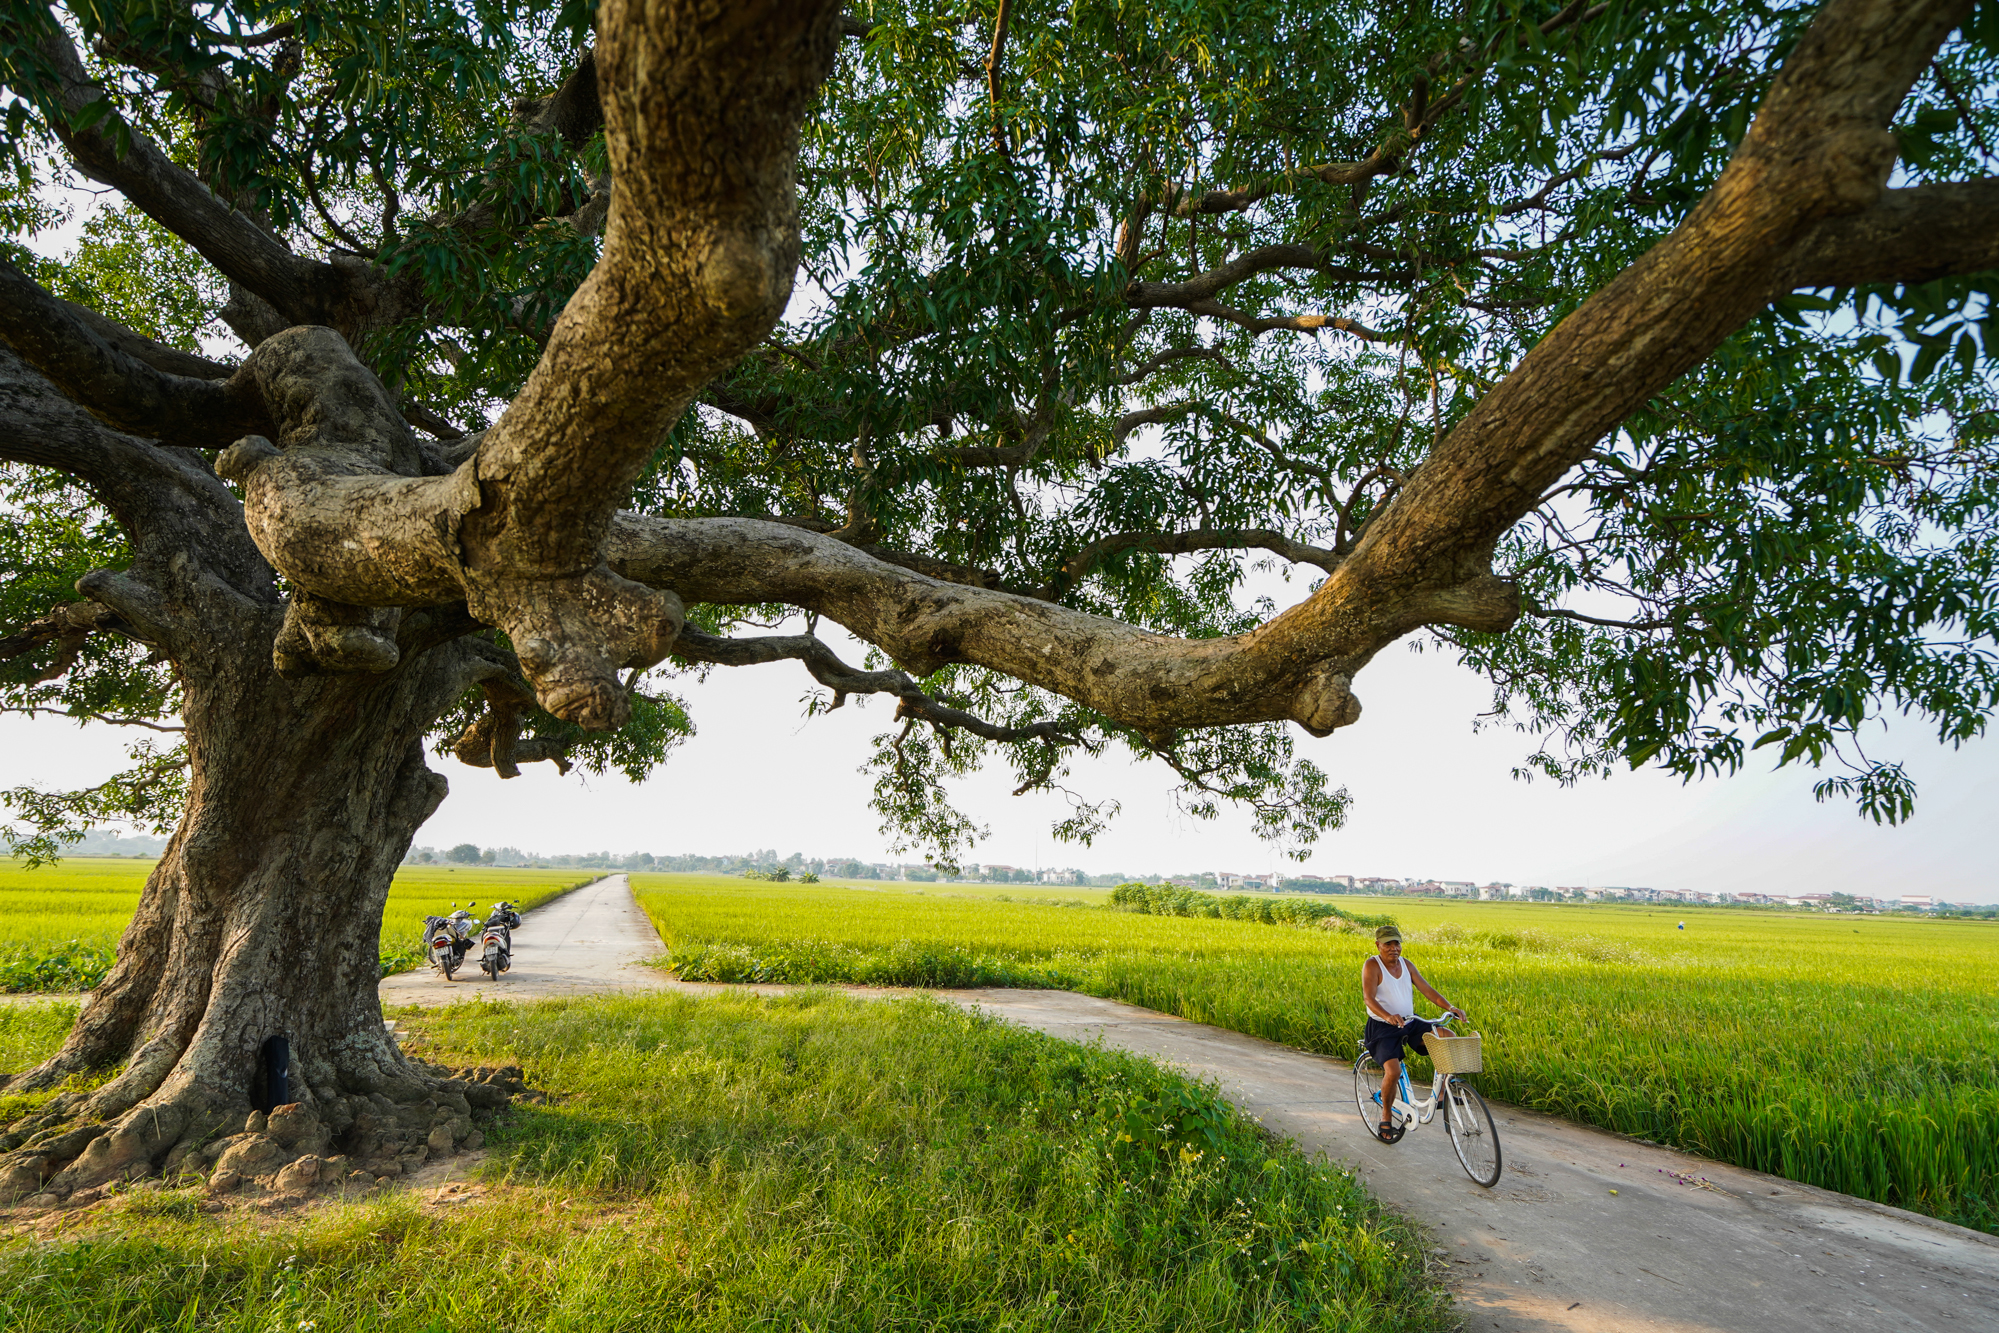 Khám phá điểm check-in siêu đẹp tại cây muỗm hơn 600 năm tuổi tại Bắc Ninh - Ảnh 6.